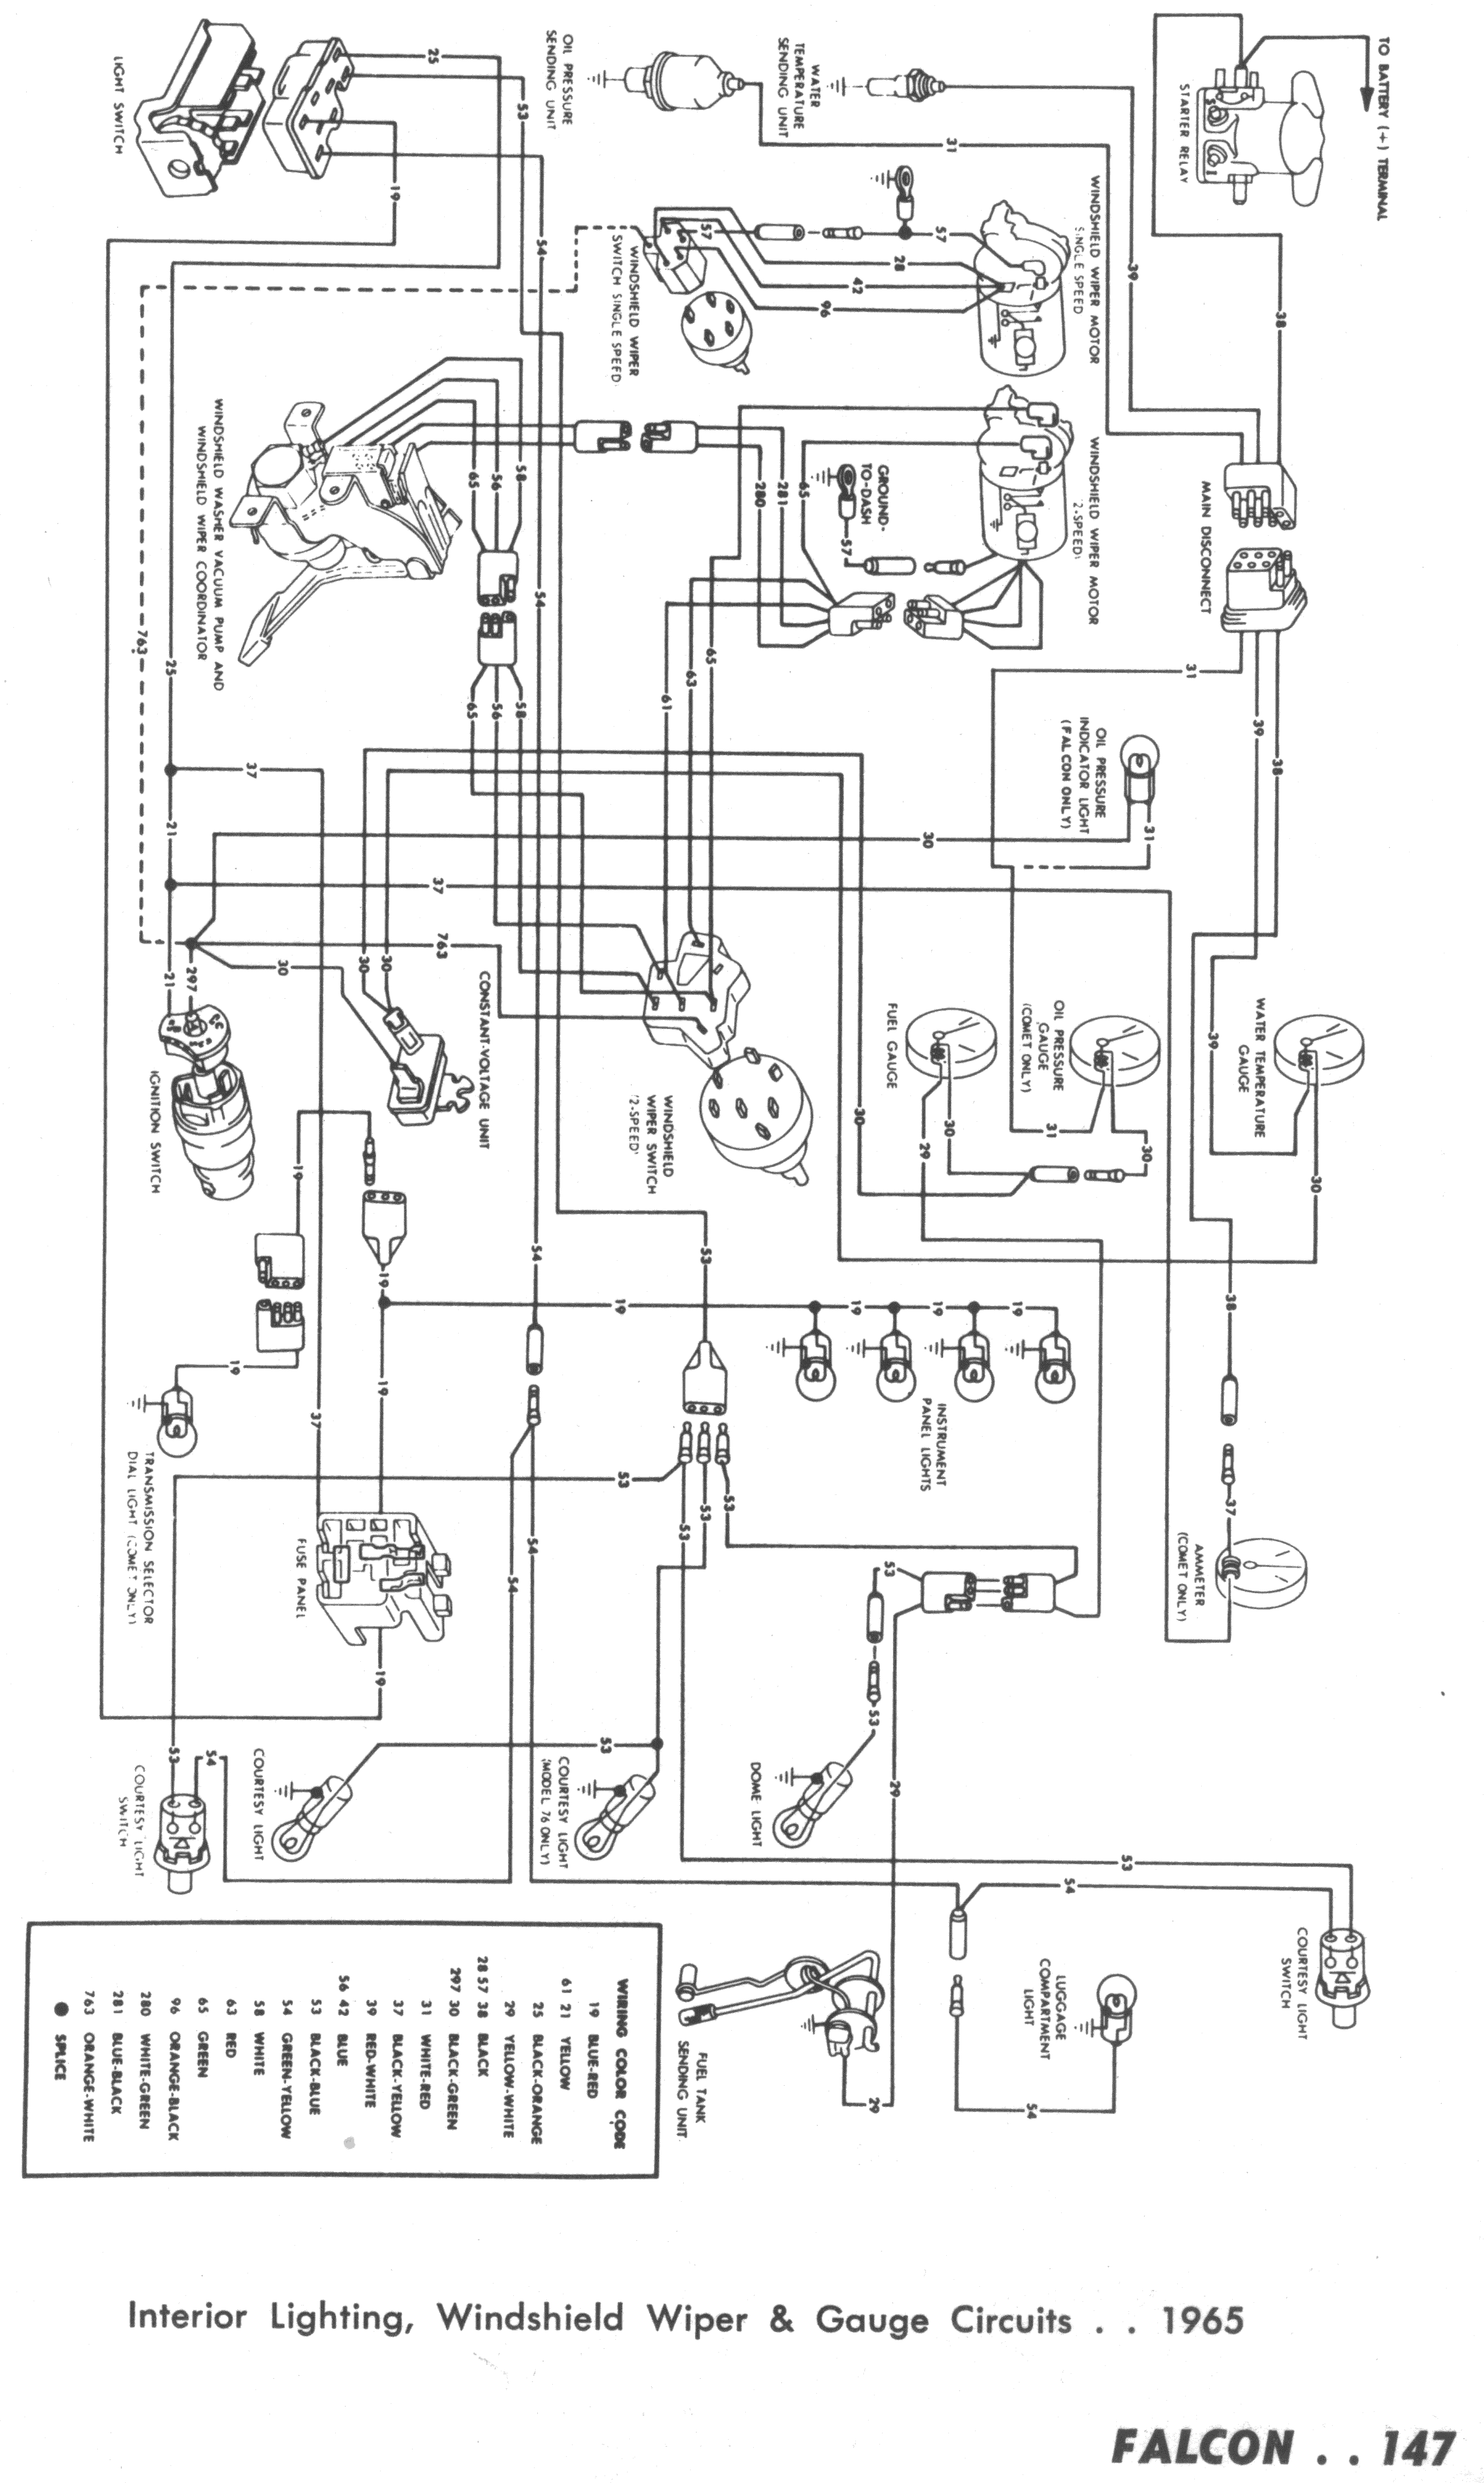 1965 Ford Falcon Wiring Diagram from falconfaq.dyndns.org